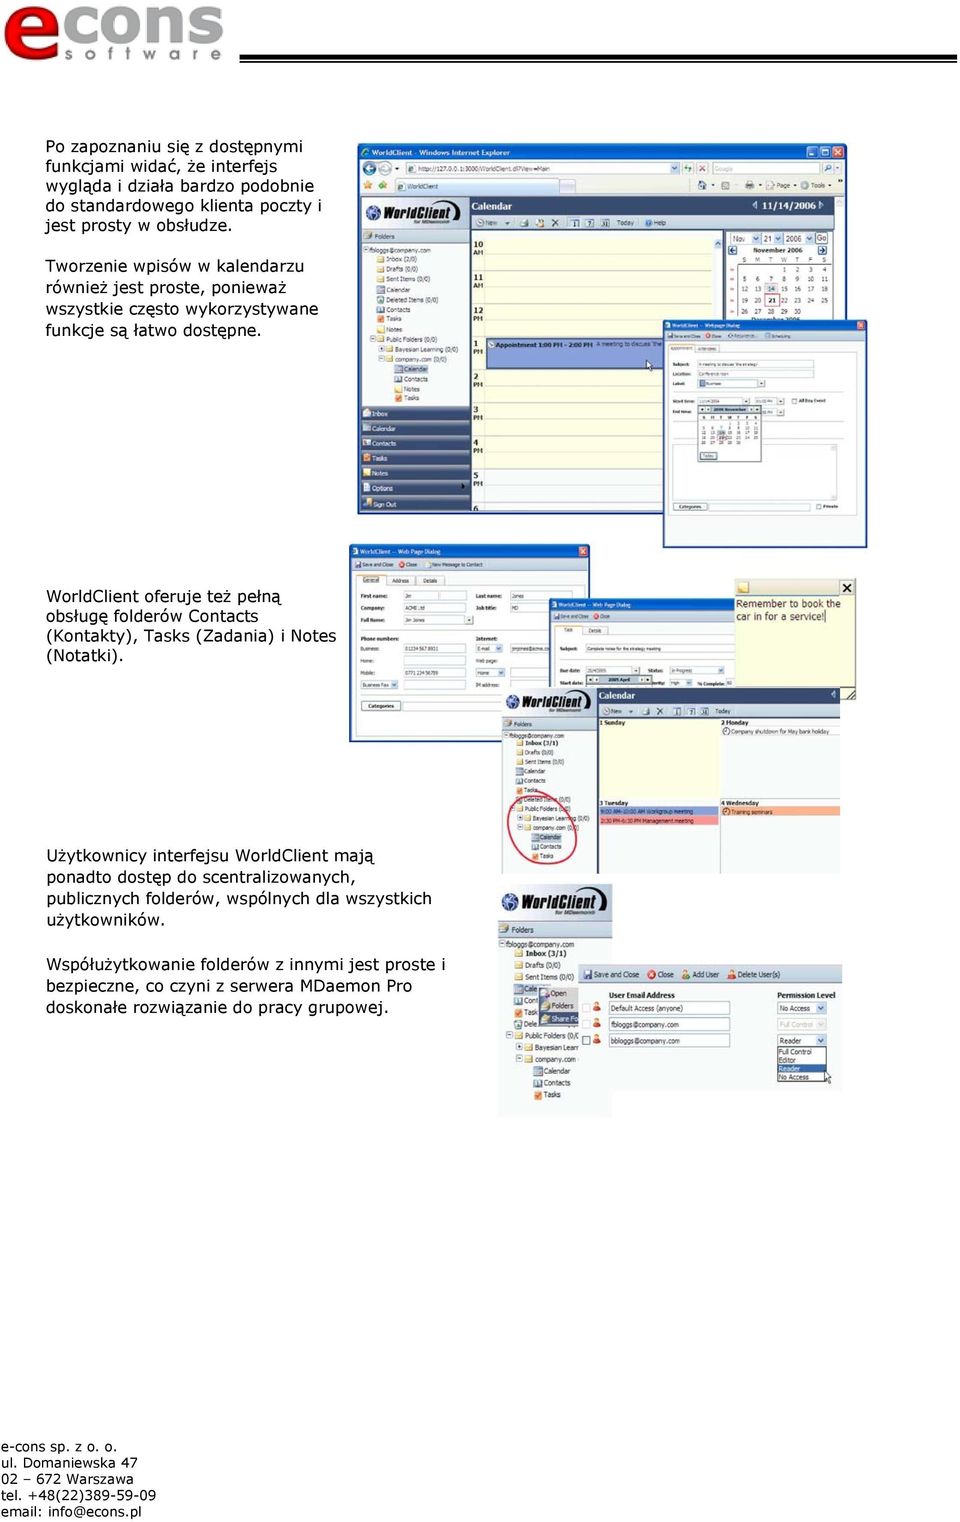 WorldClient oferuje też pełną obsługę folderów Contacts (Kontakty), Tasks (Zadania) i Notes (Notatki).